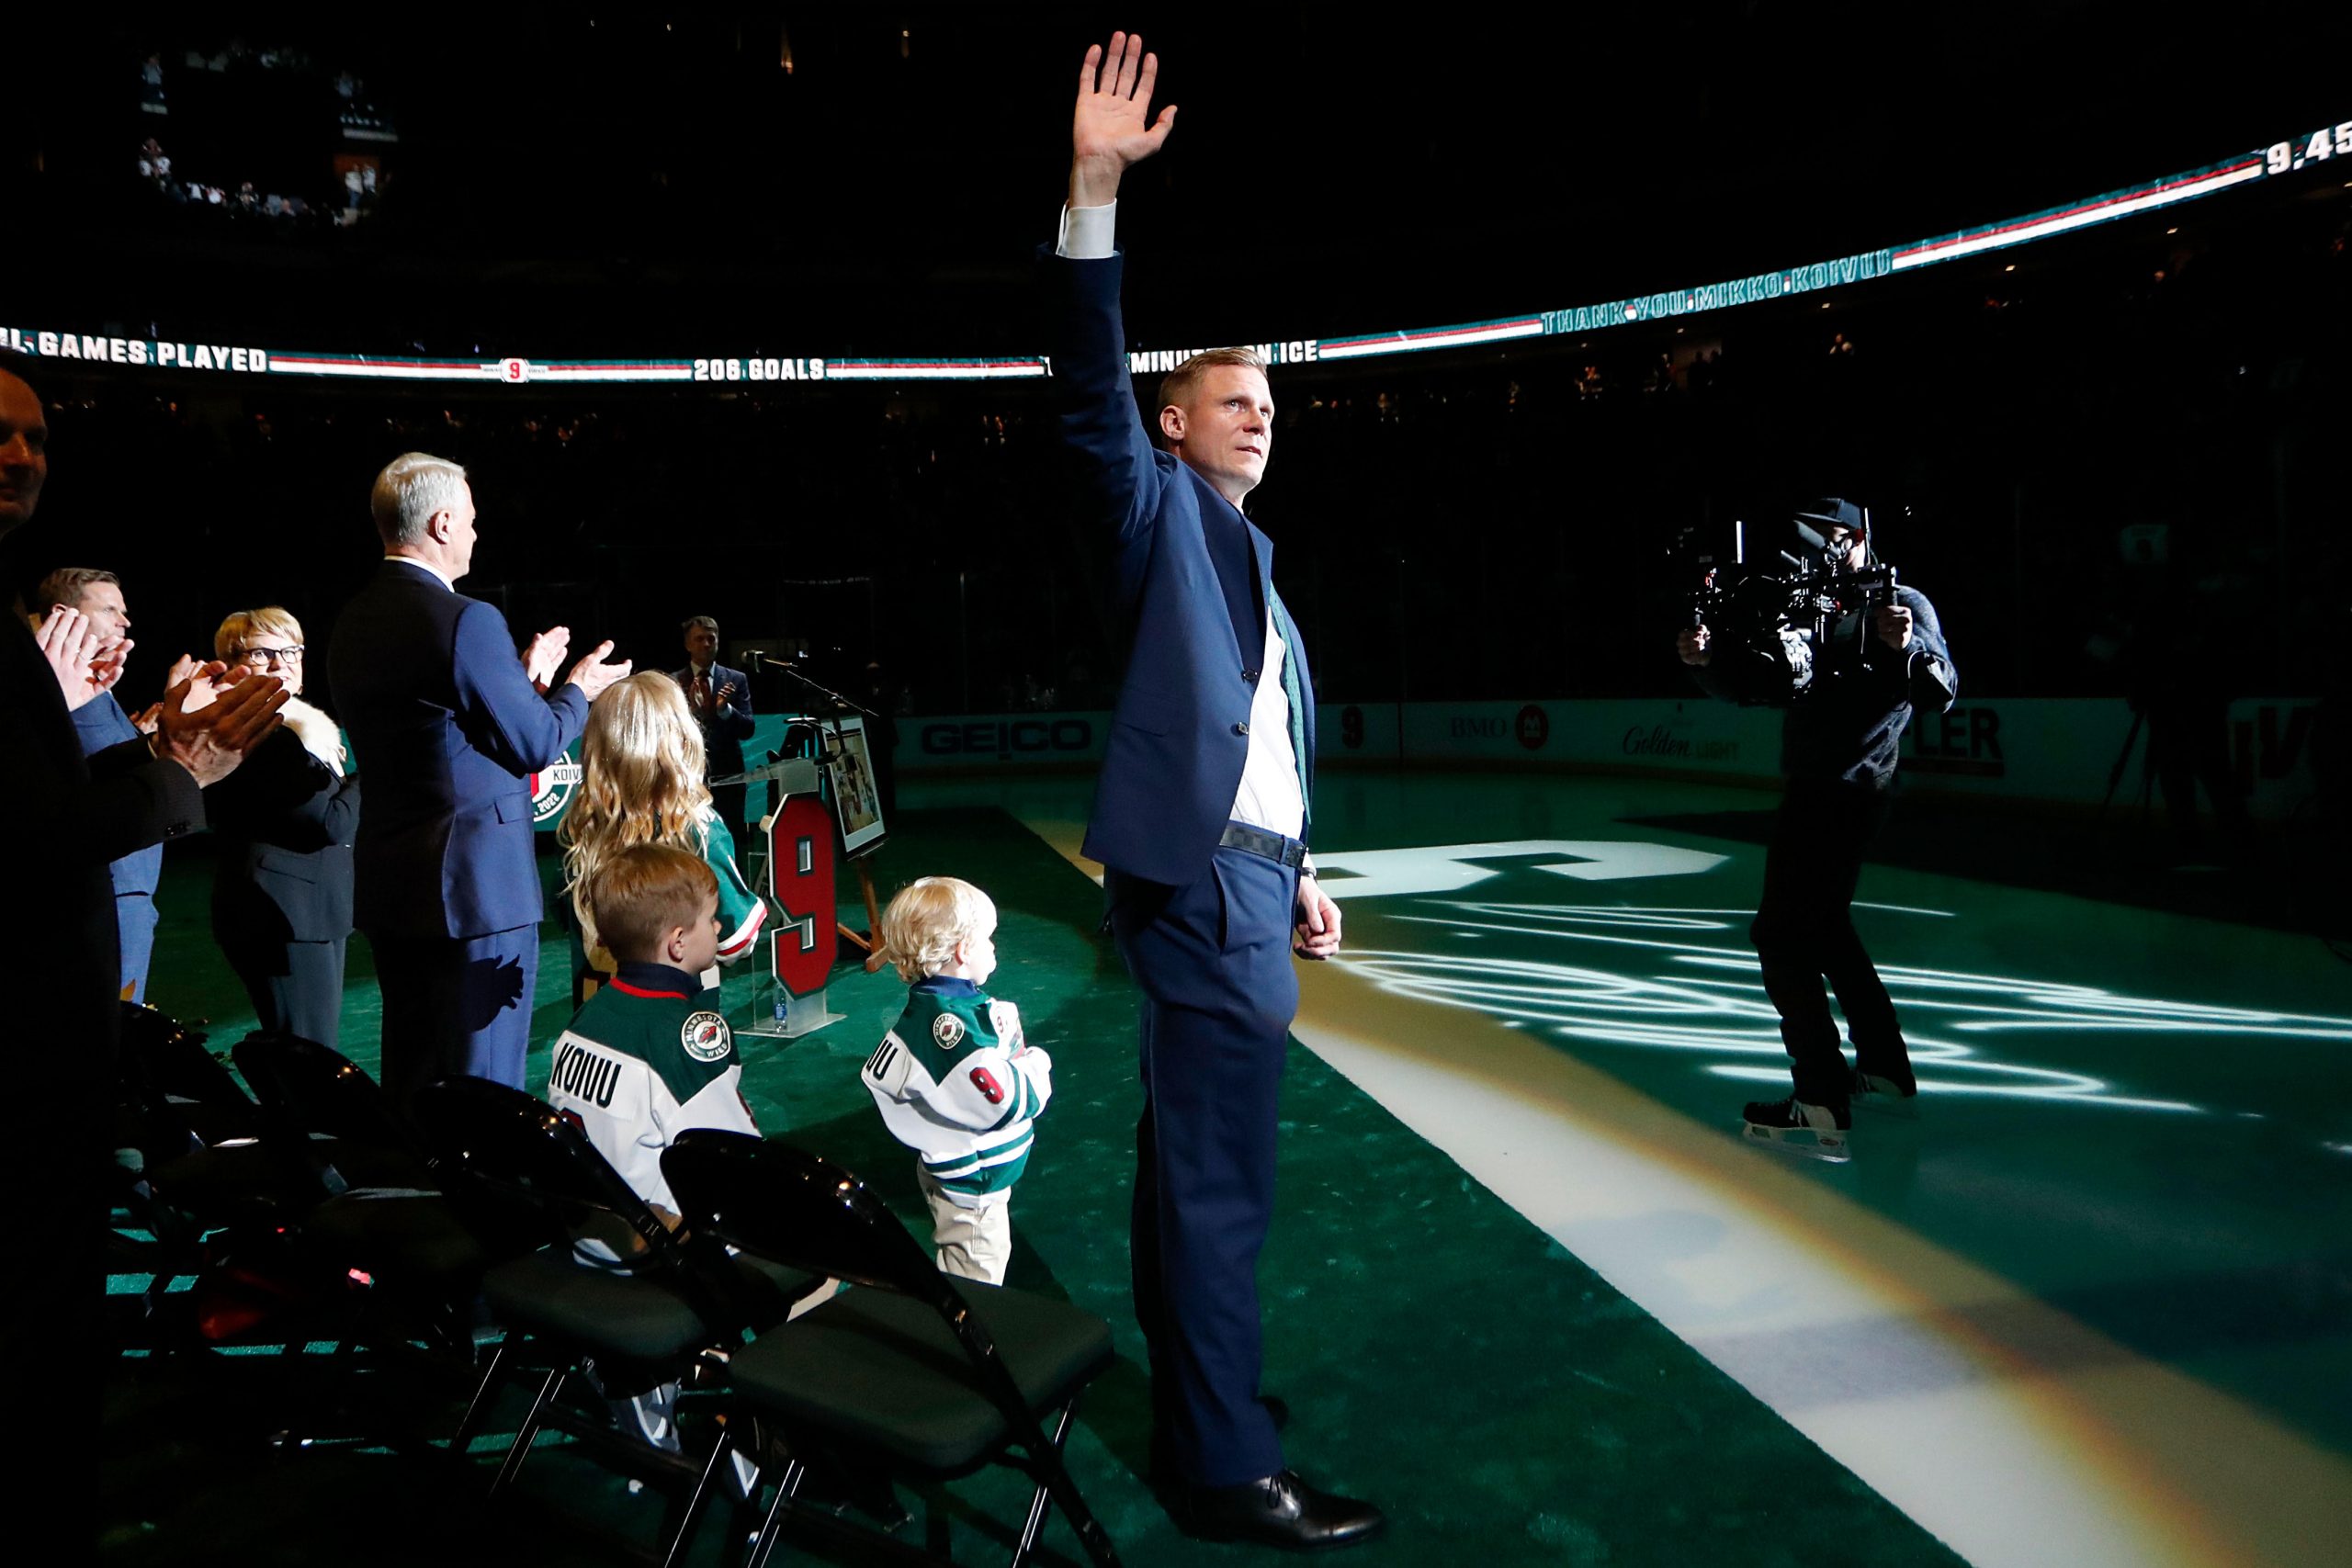 Former Minnesota Wild captain Mikko Koivu on having jersey retired